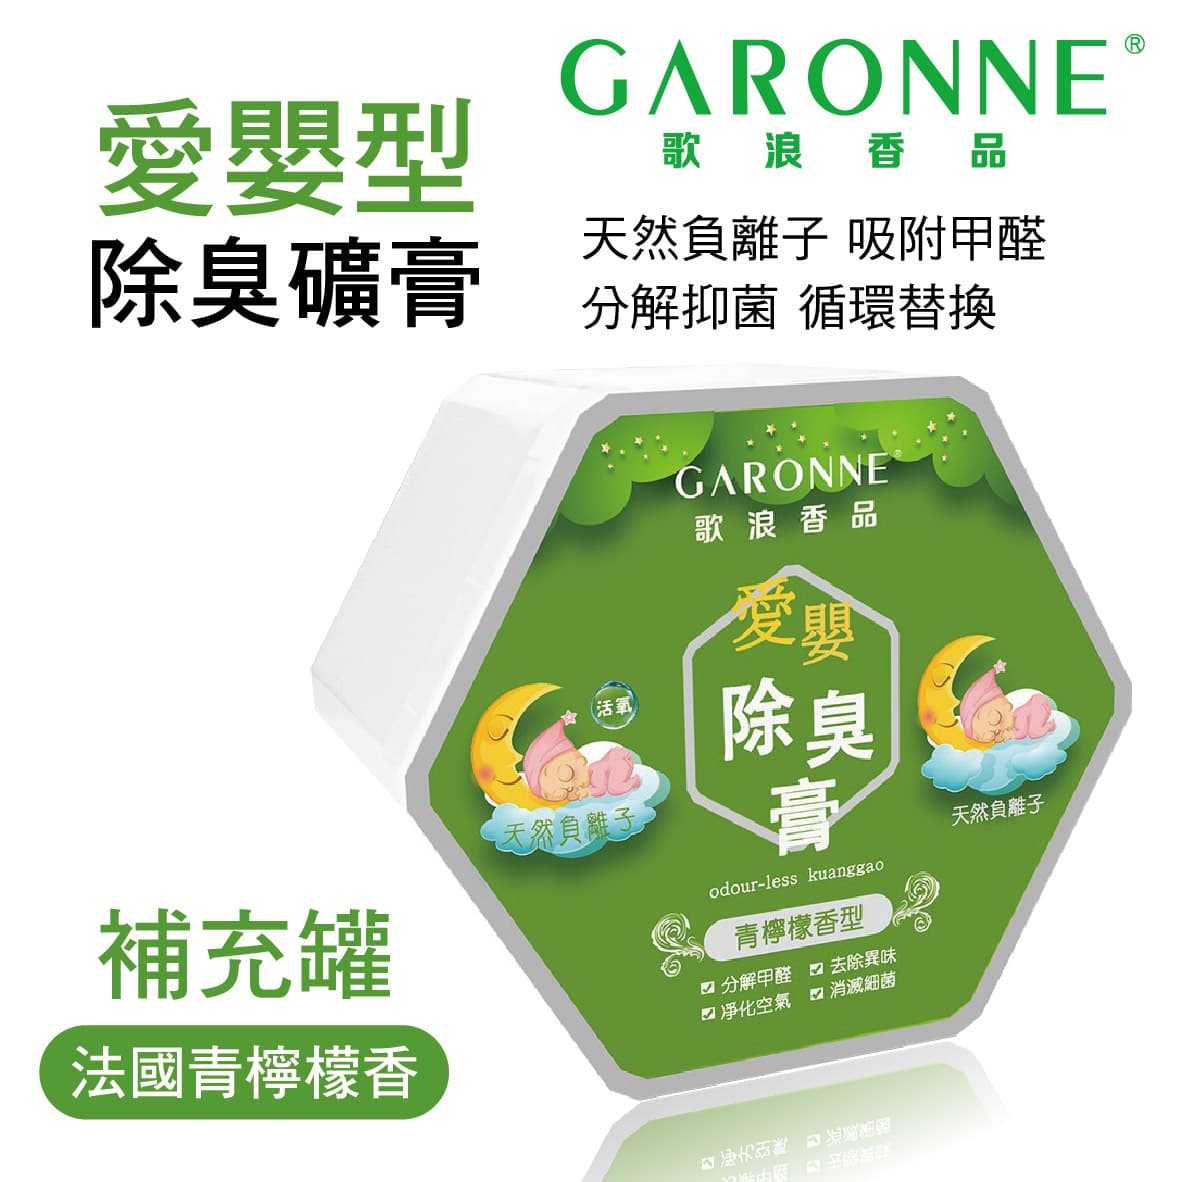 真便宜 GARONNE歌浪香品 愛嬰型除臭礦膏(法國青檸檬香)補充罐